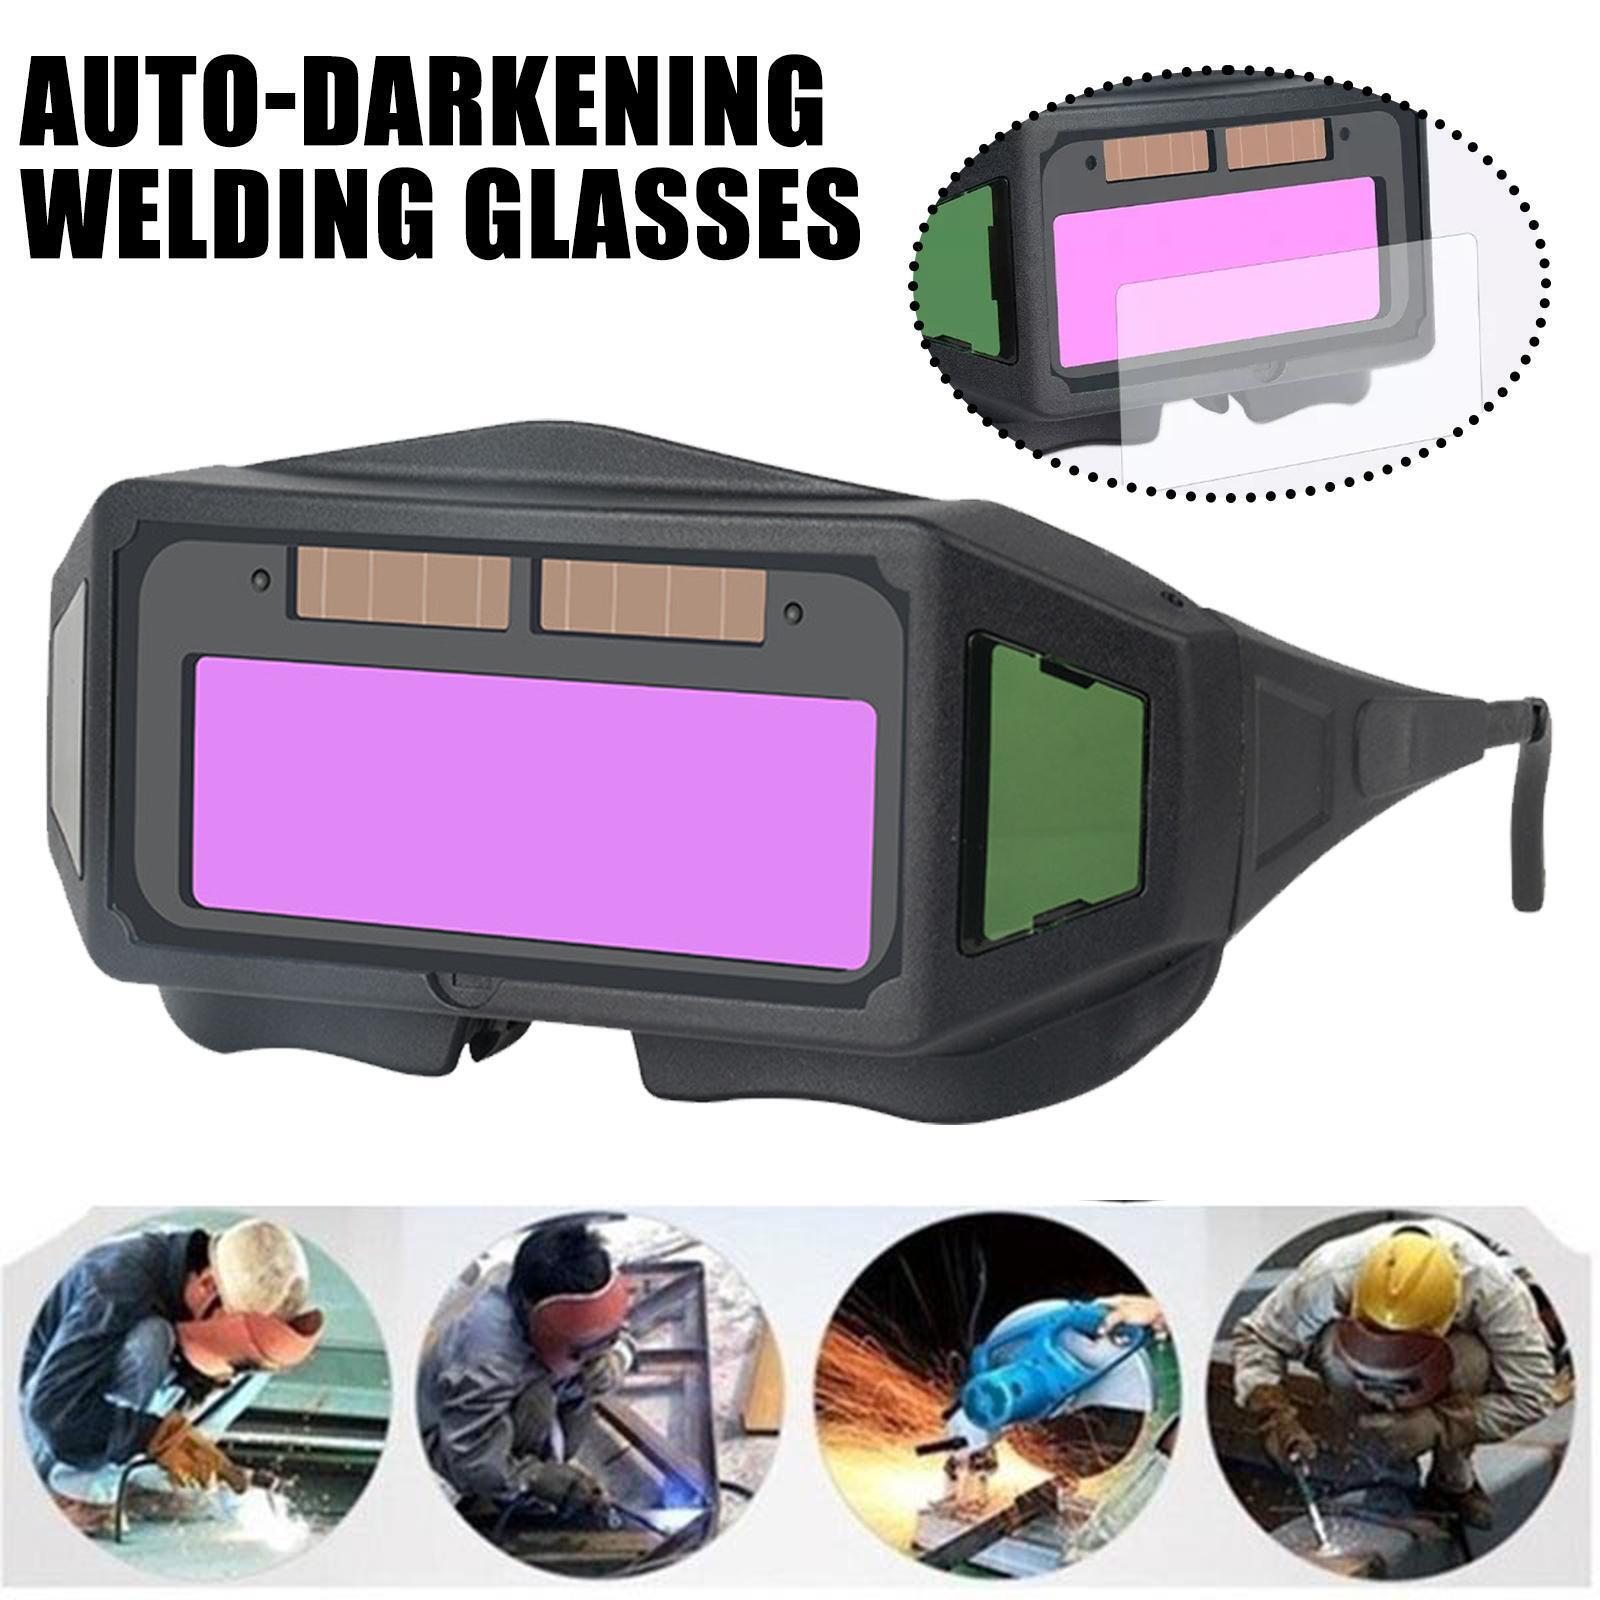 Auto-darkening Welding Glasses Burning Welding Eye Protection Glasses Best